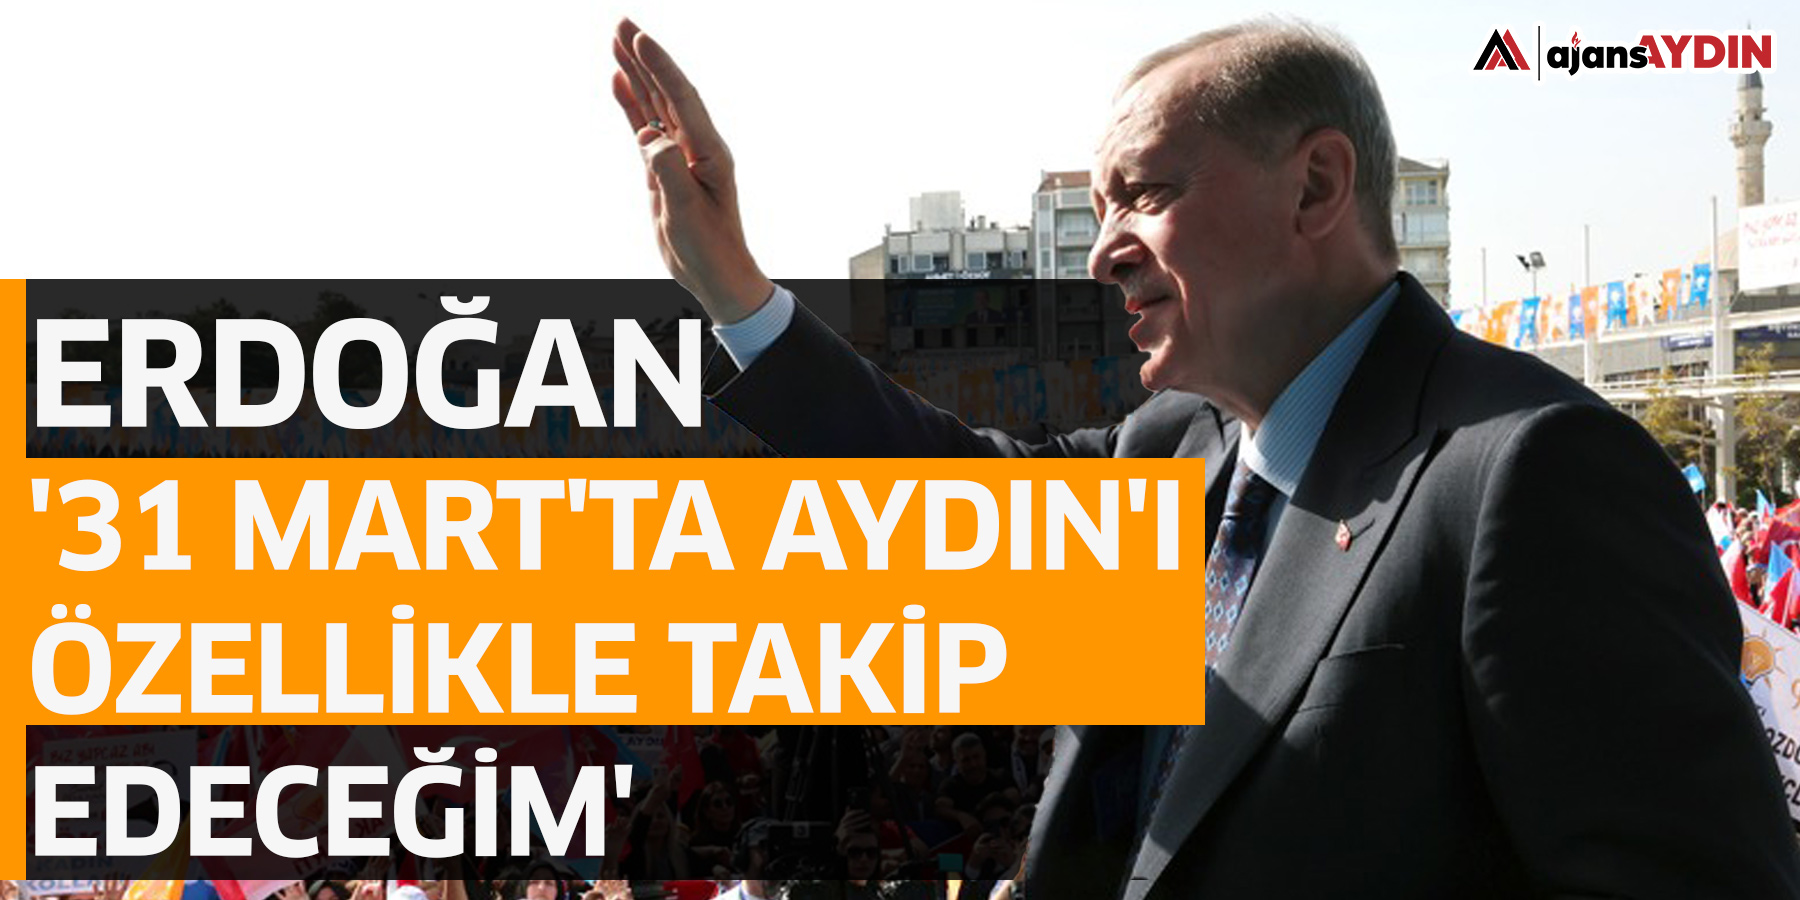 Erdoğan: '31 Mart'ta Aydın'ı özellikle takip edeceğim'